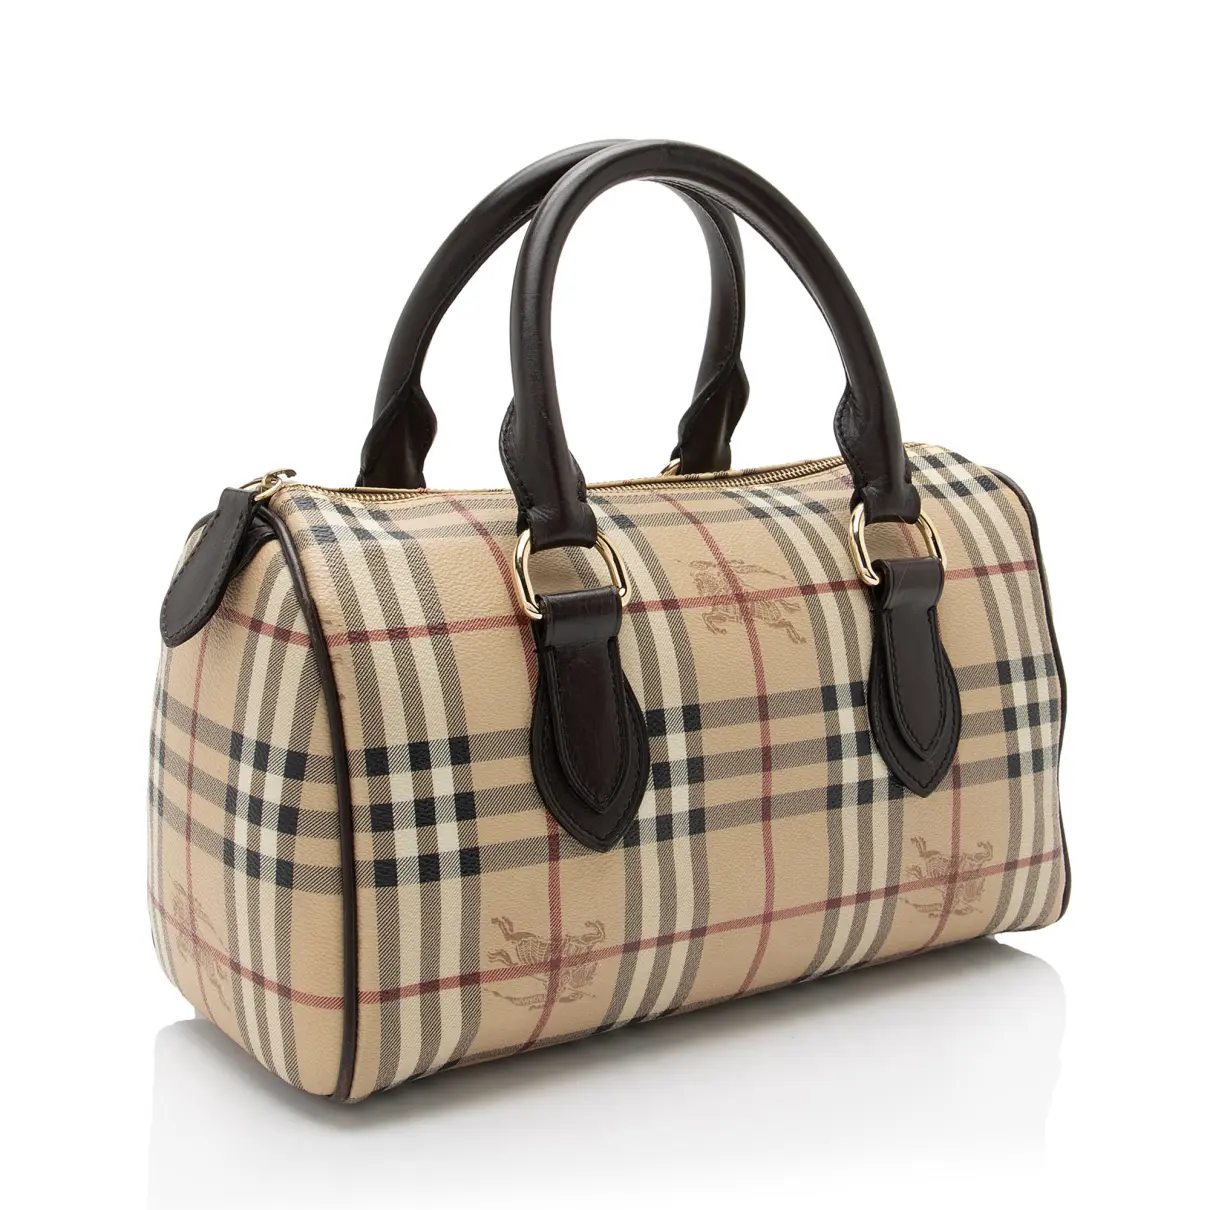 Buy Burberry Cloth satchel online